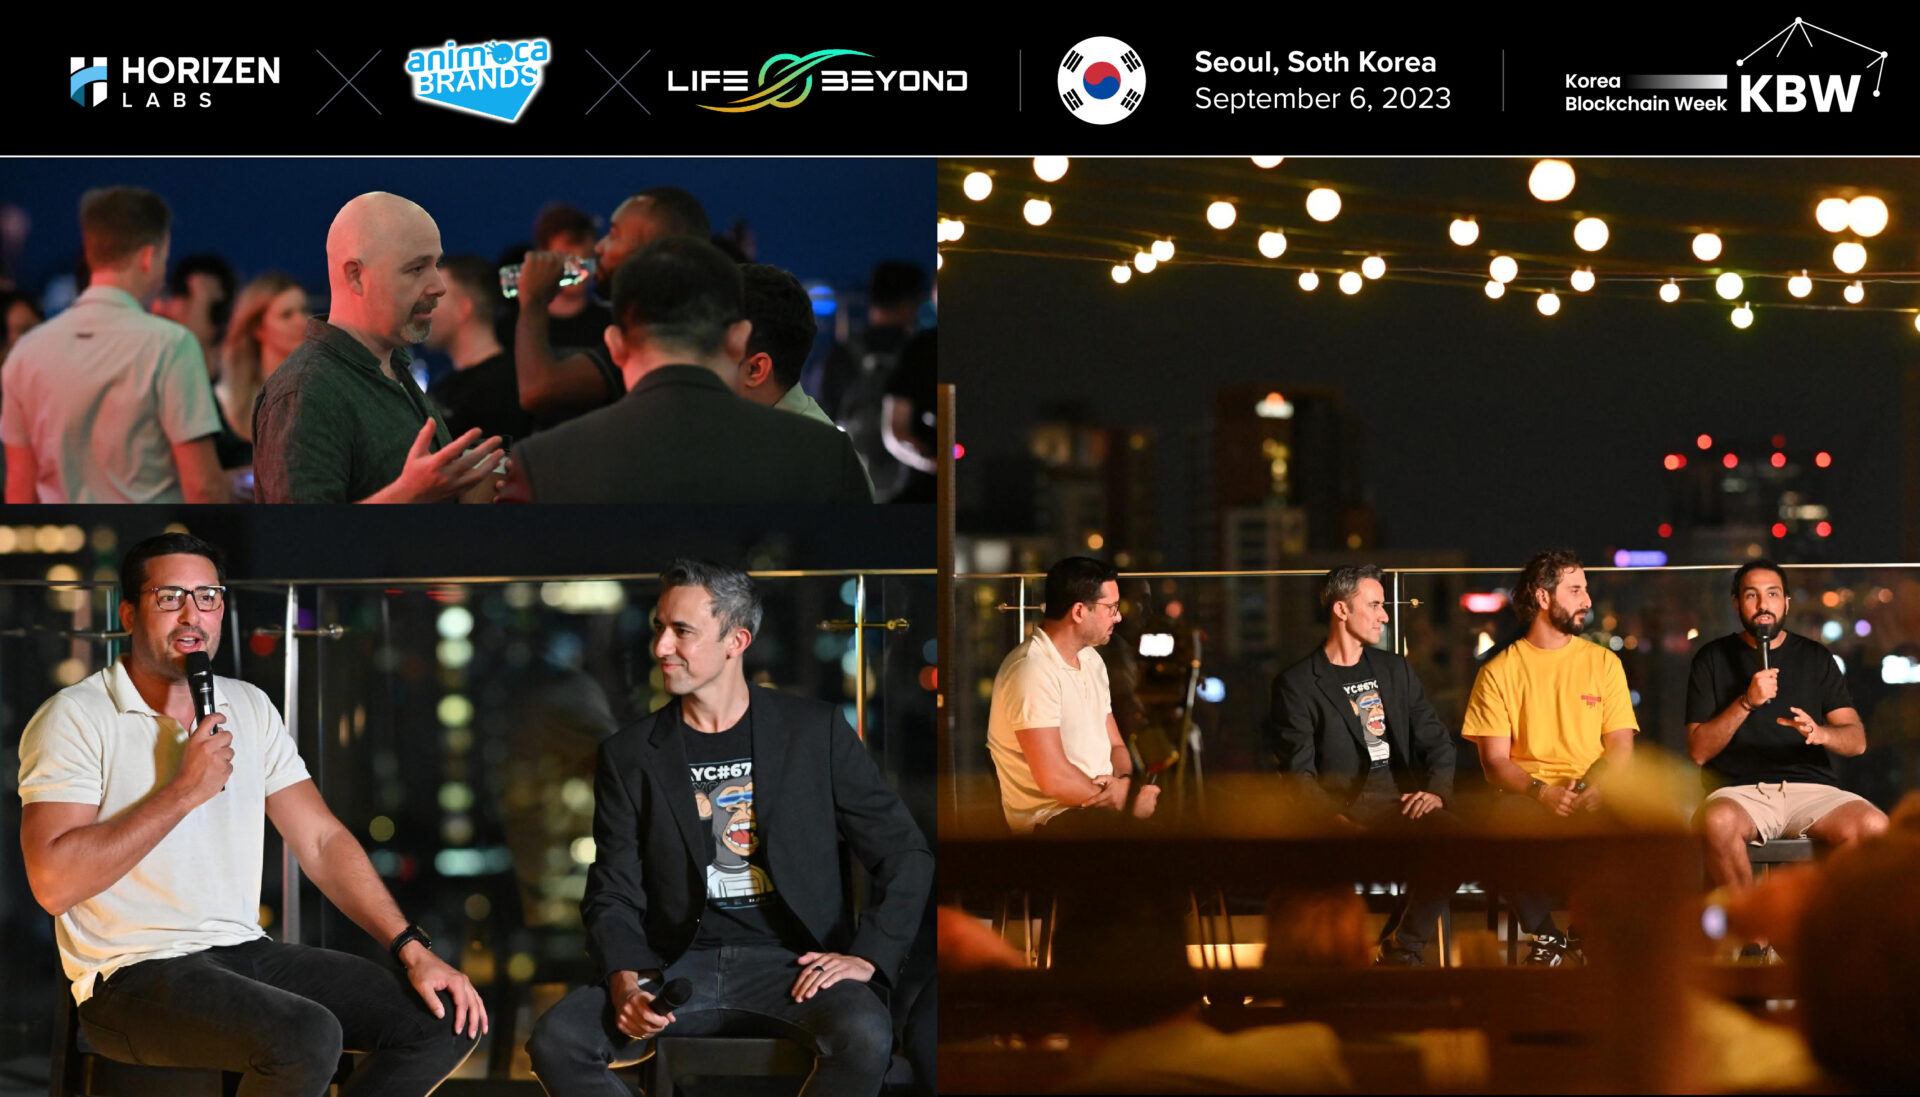 HL_event-image-korea new(1)